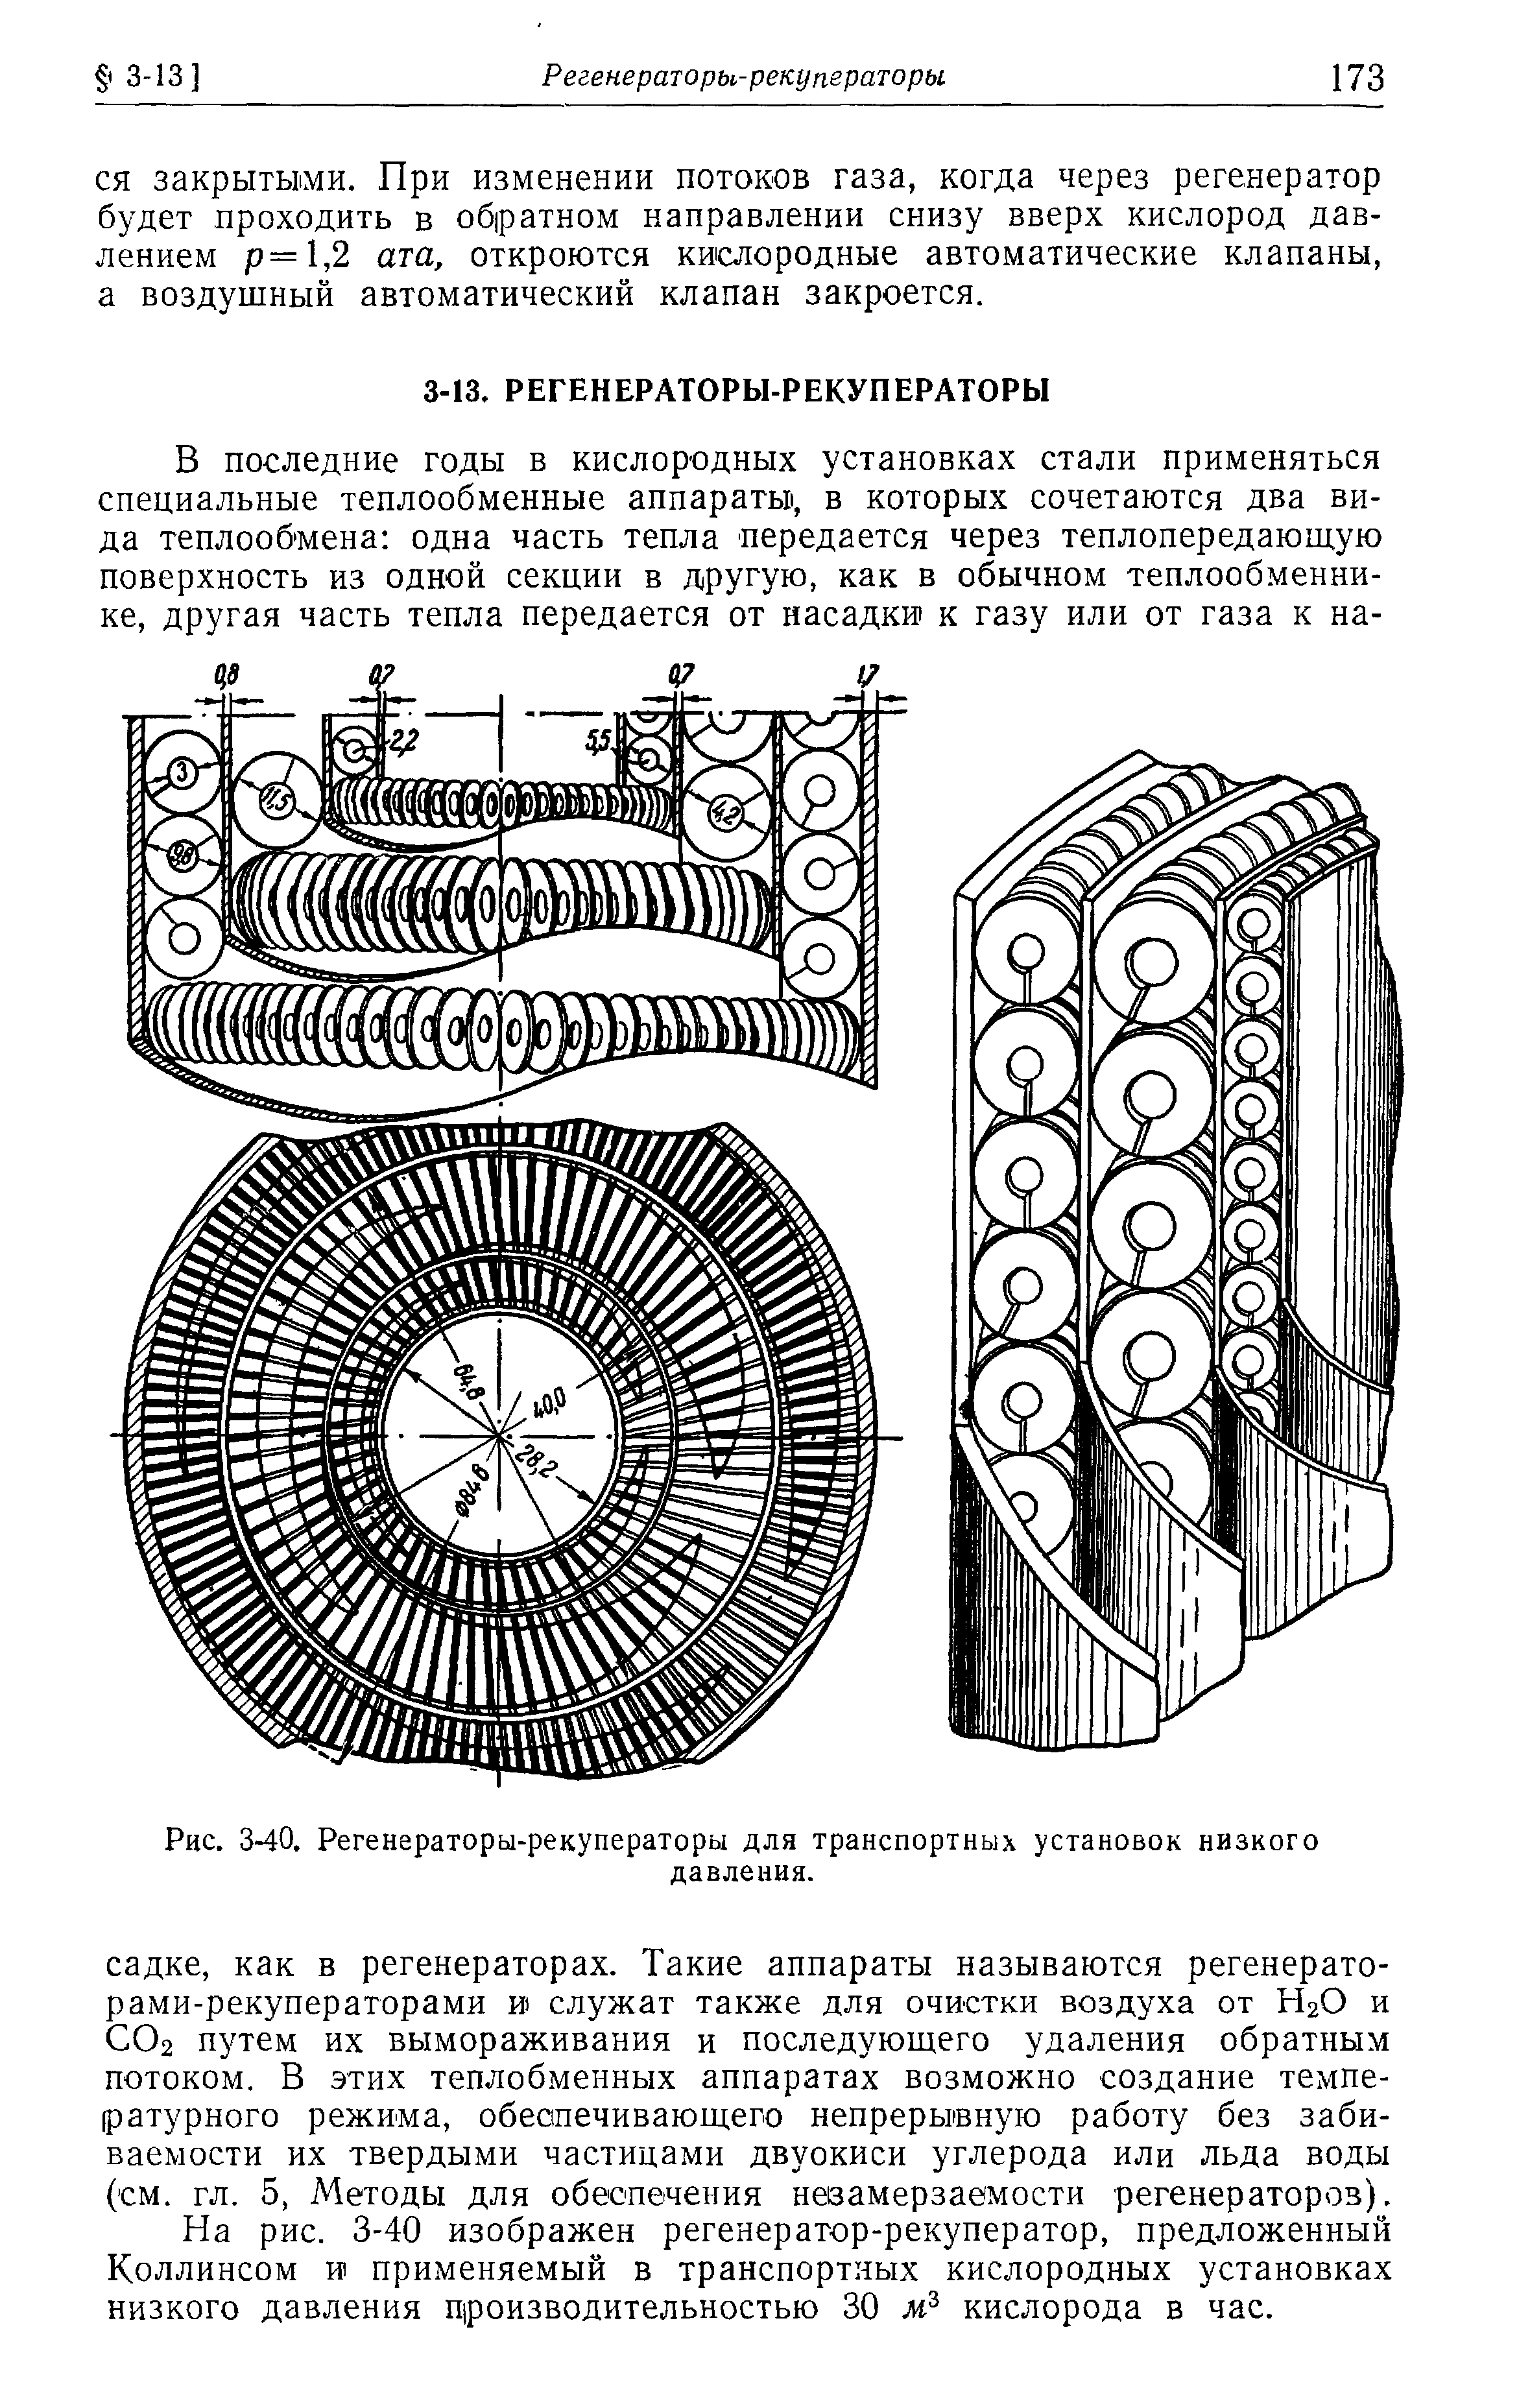 На рис. 3-40 изображен регенератор-рекуператор, предложенный Коллинсом И1 применяемый в транспортных кислородных установках низкого давления производительностью 30 кислорода в час.